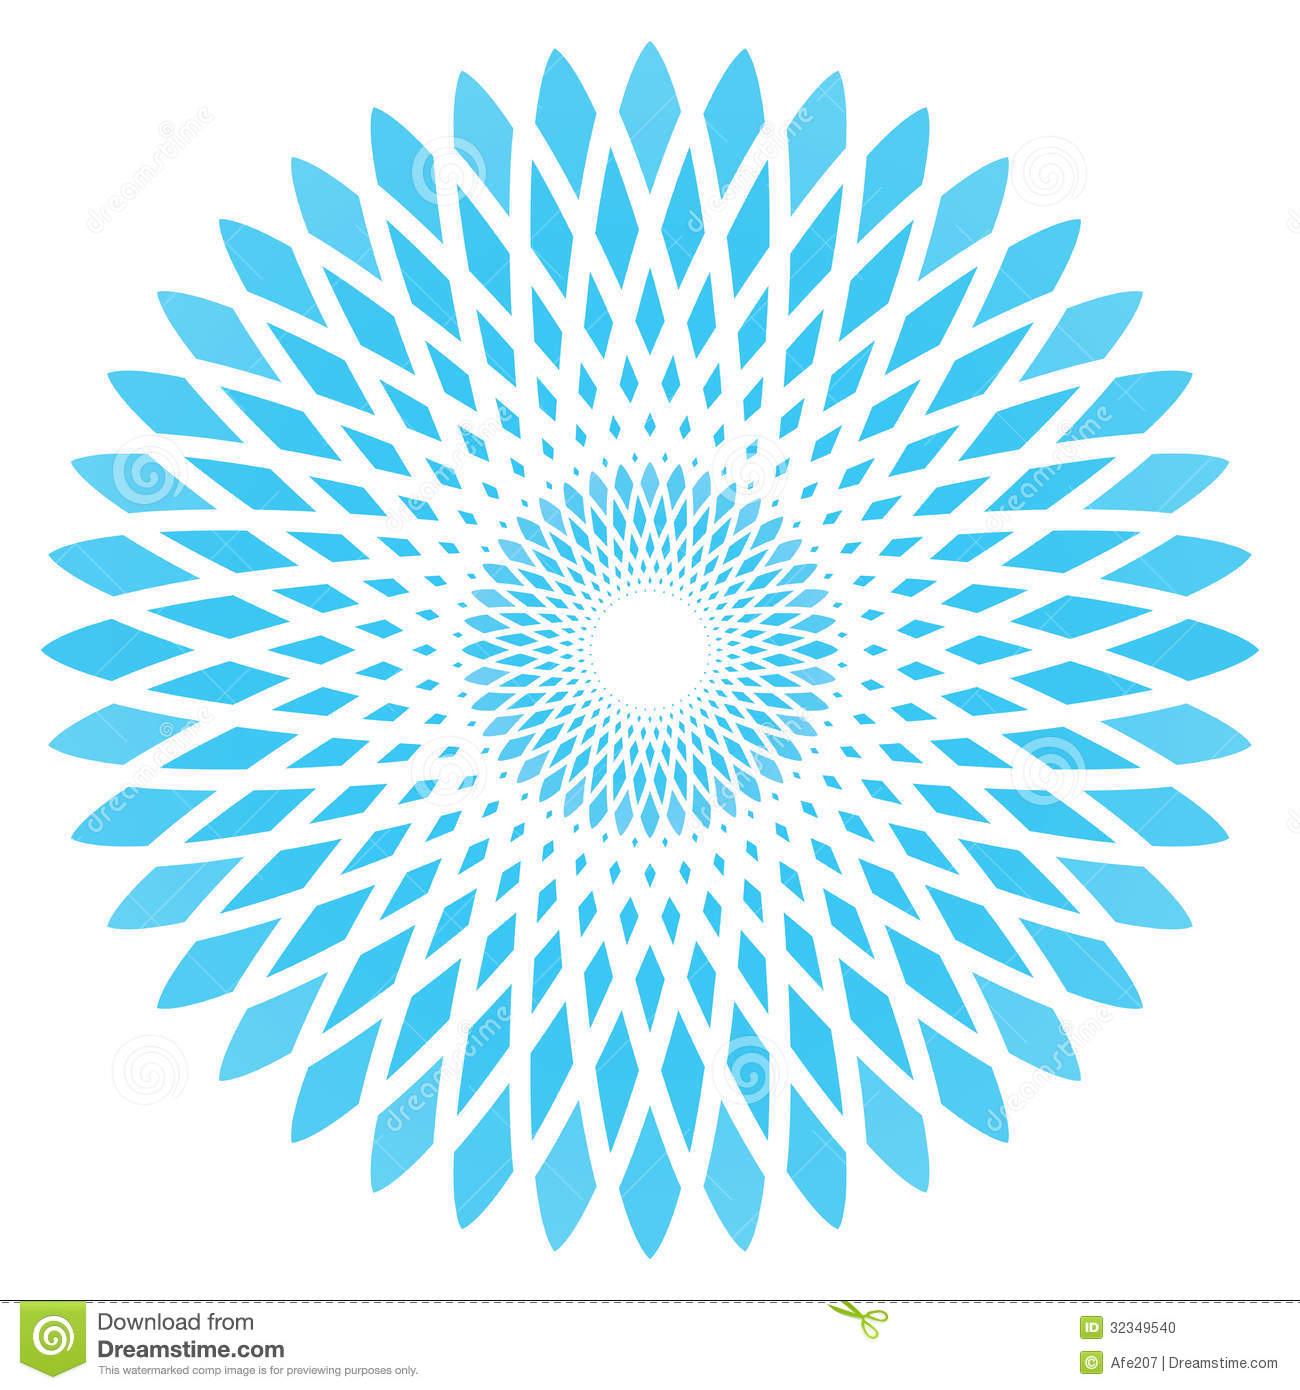 Blue Abstract Circle Vector